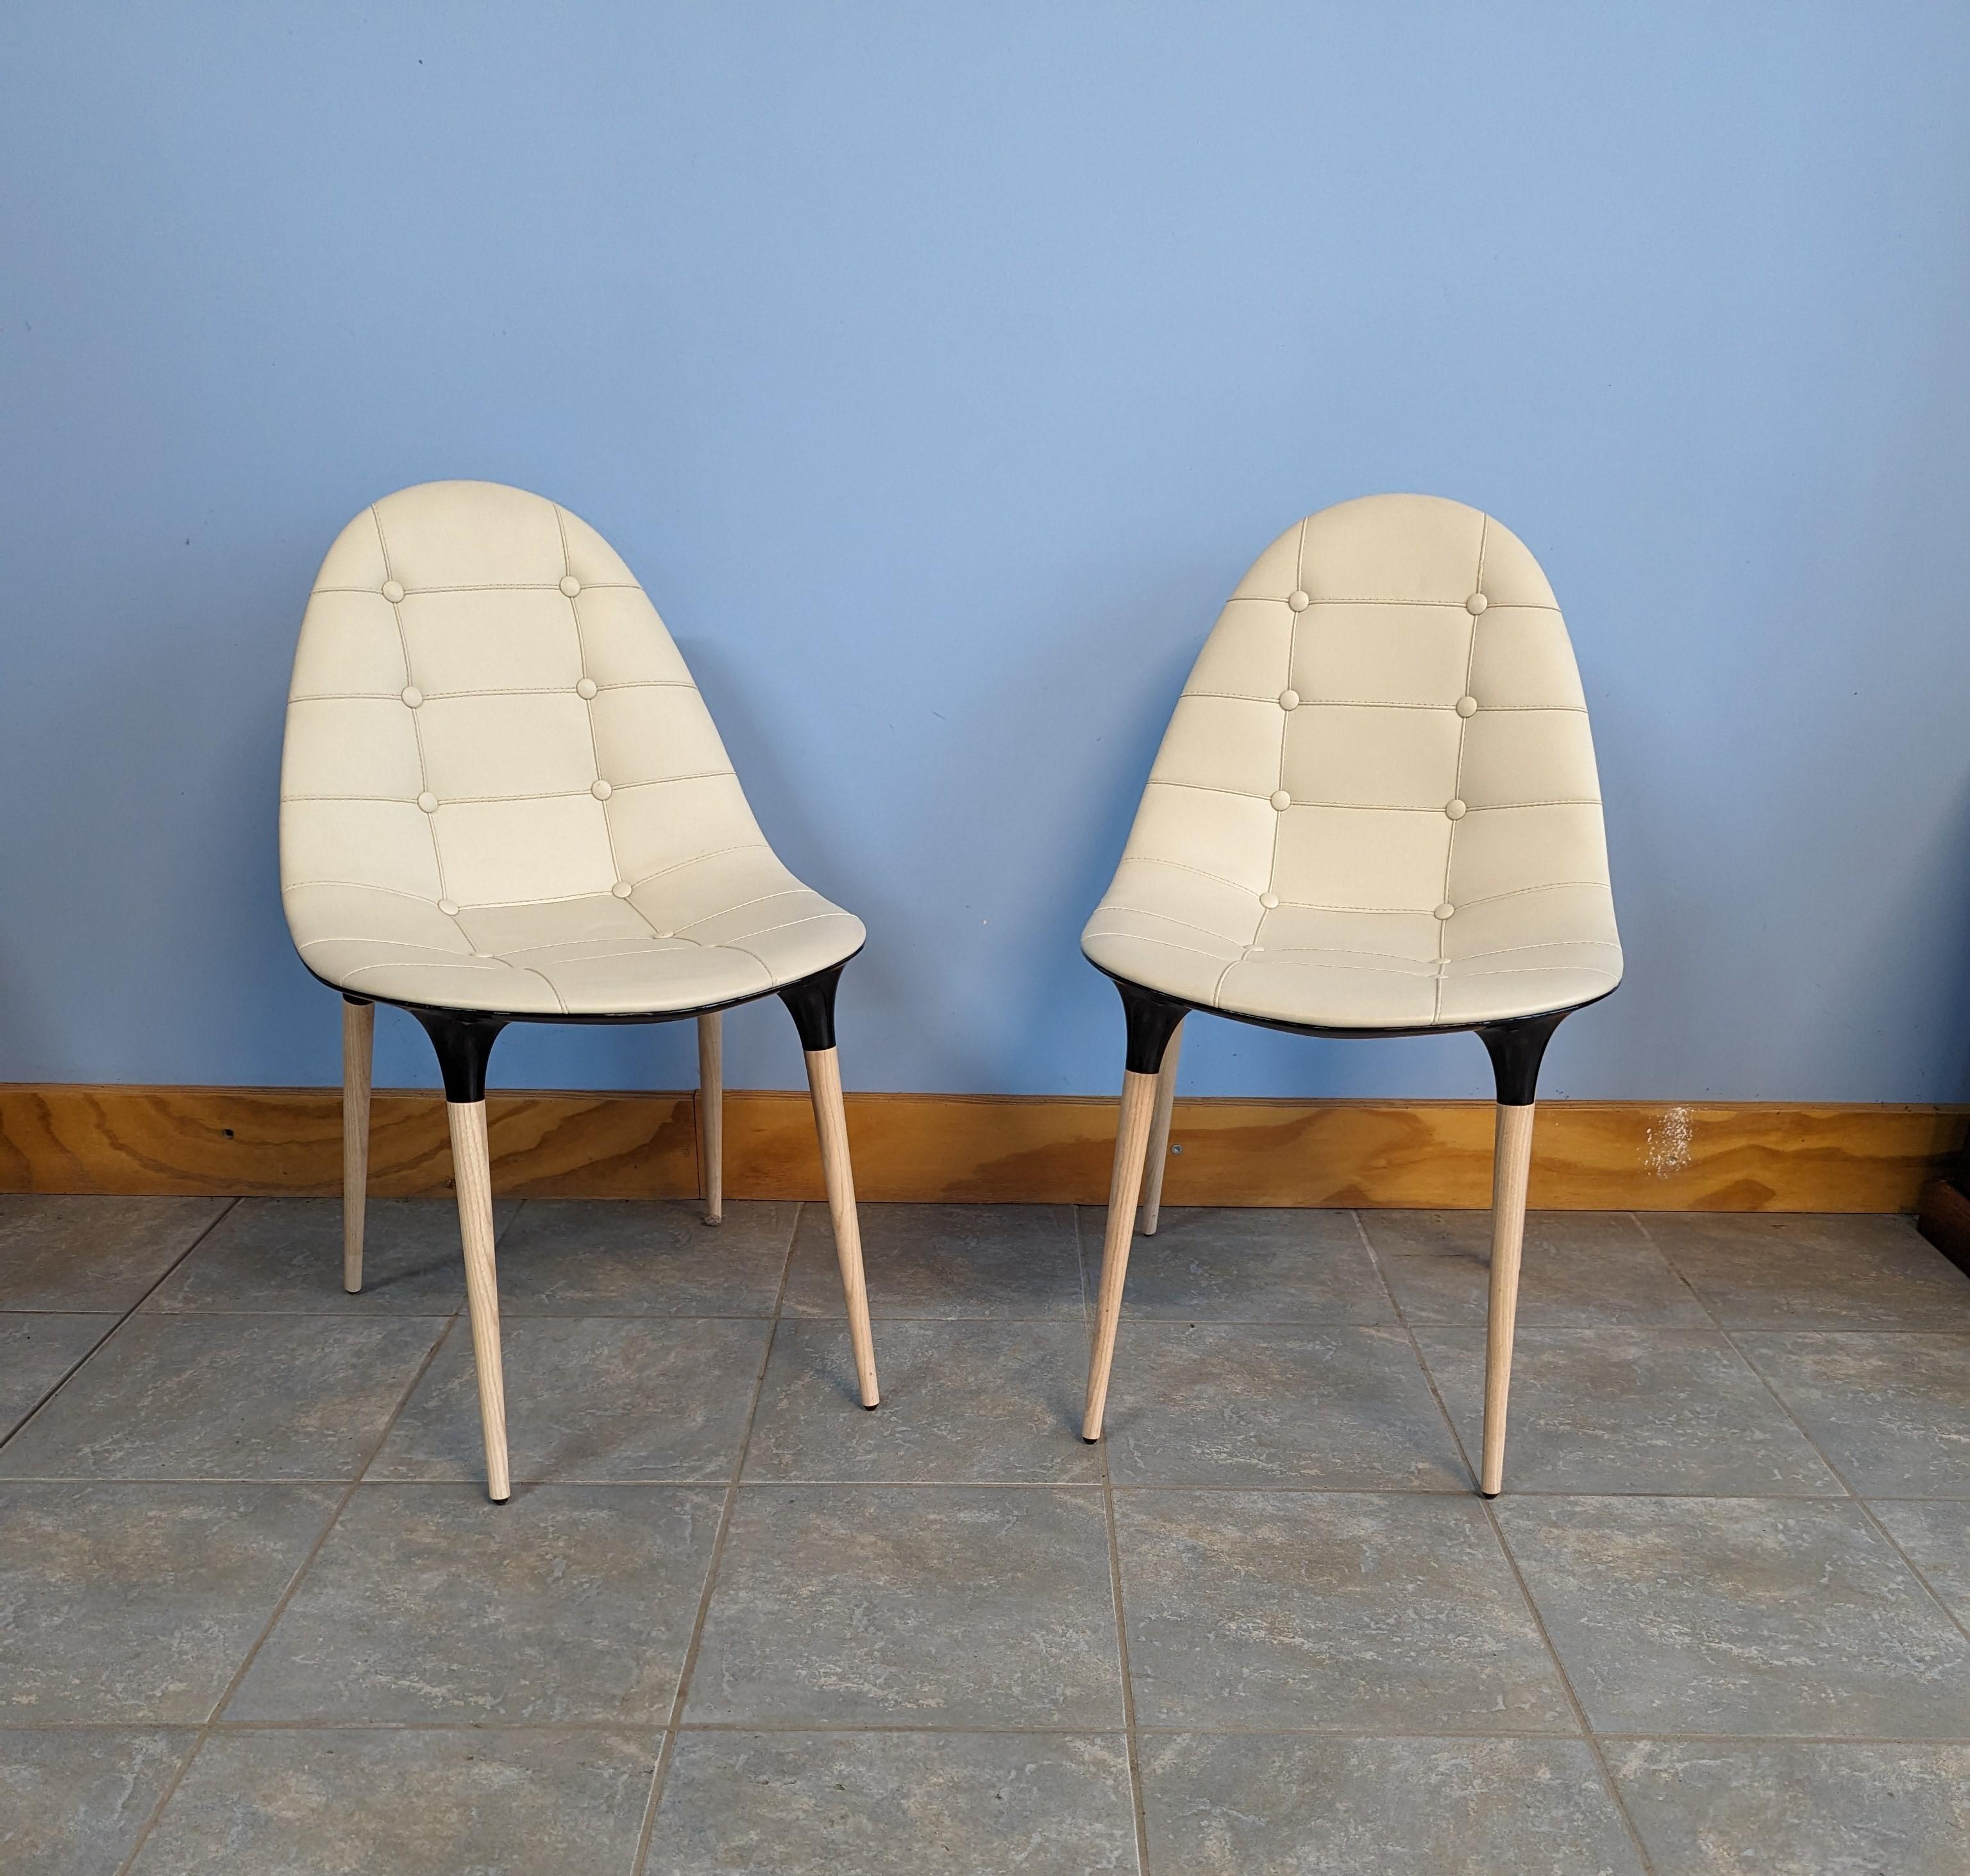 Satz  „Caprice“ di due sedie, entworfen von Philippe Stark prodotte da Cassina, 2010